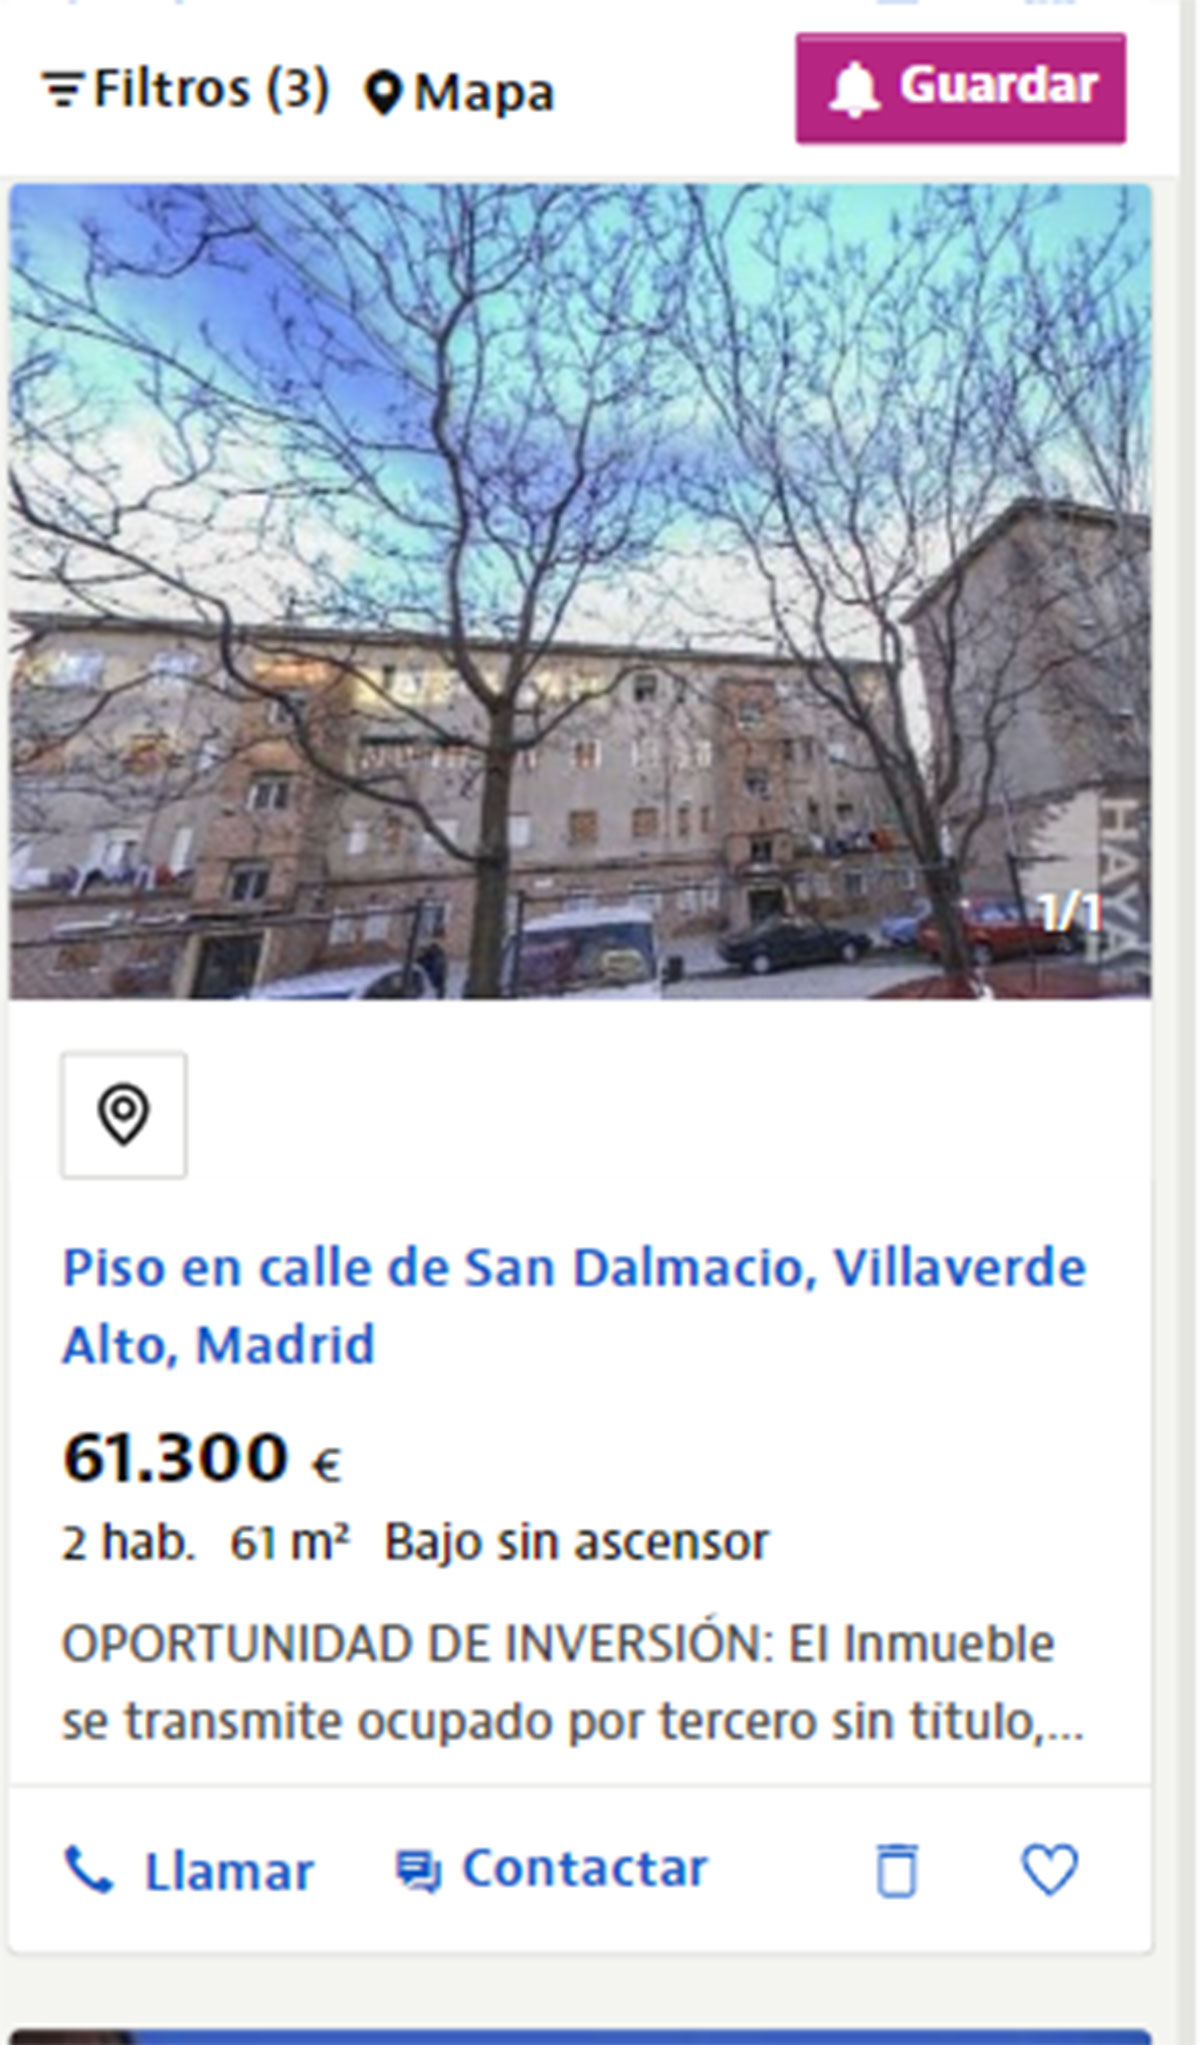 Piso cerca de Madrid por 61.300 euros